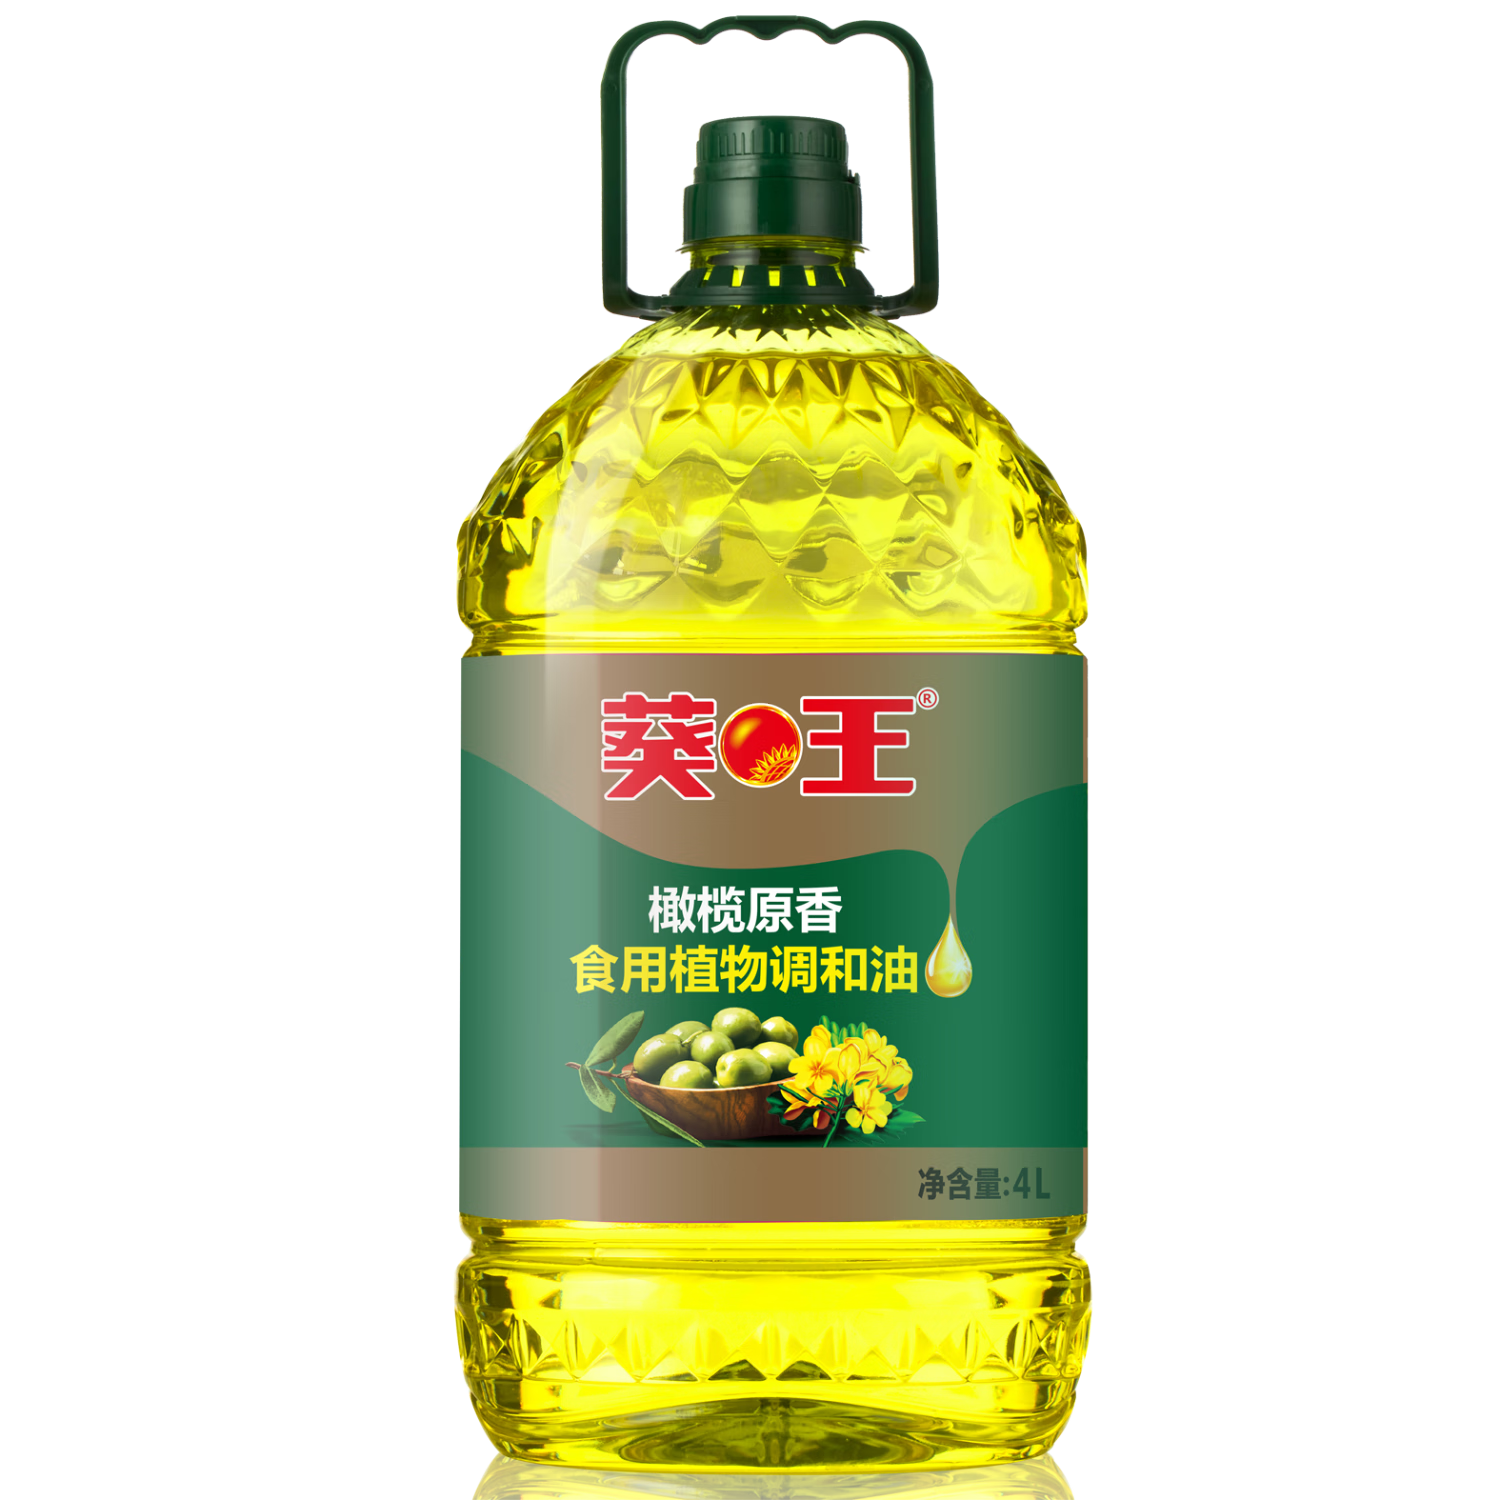 葵王 橄榄原香食用植物调和油4L添加特级初榨橄榄油 桶装食用油(桶)